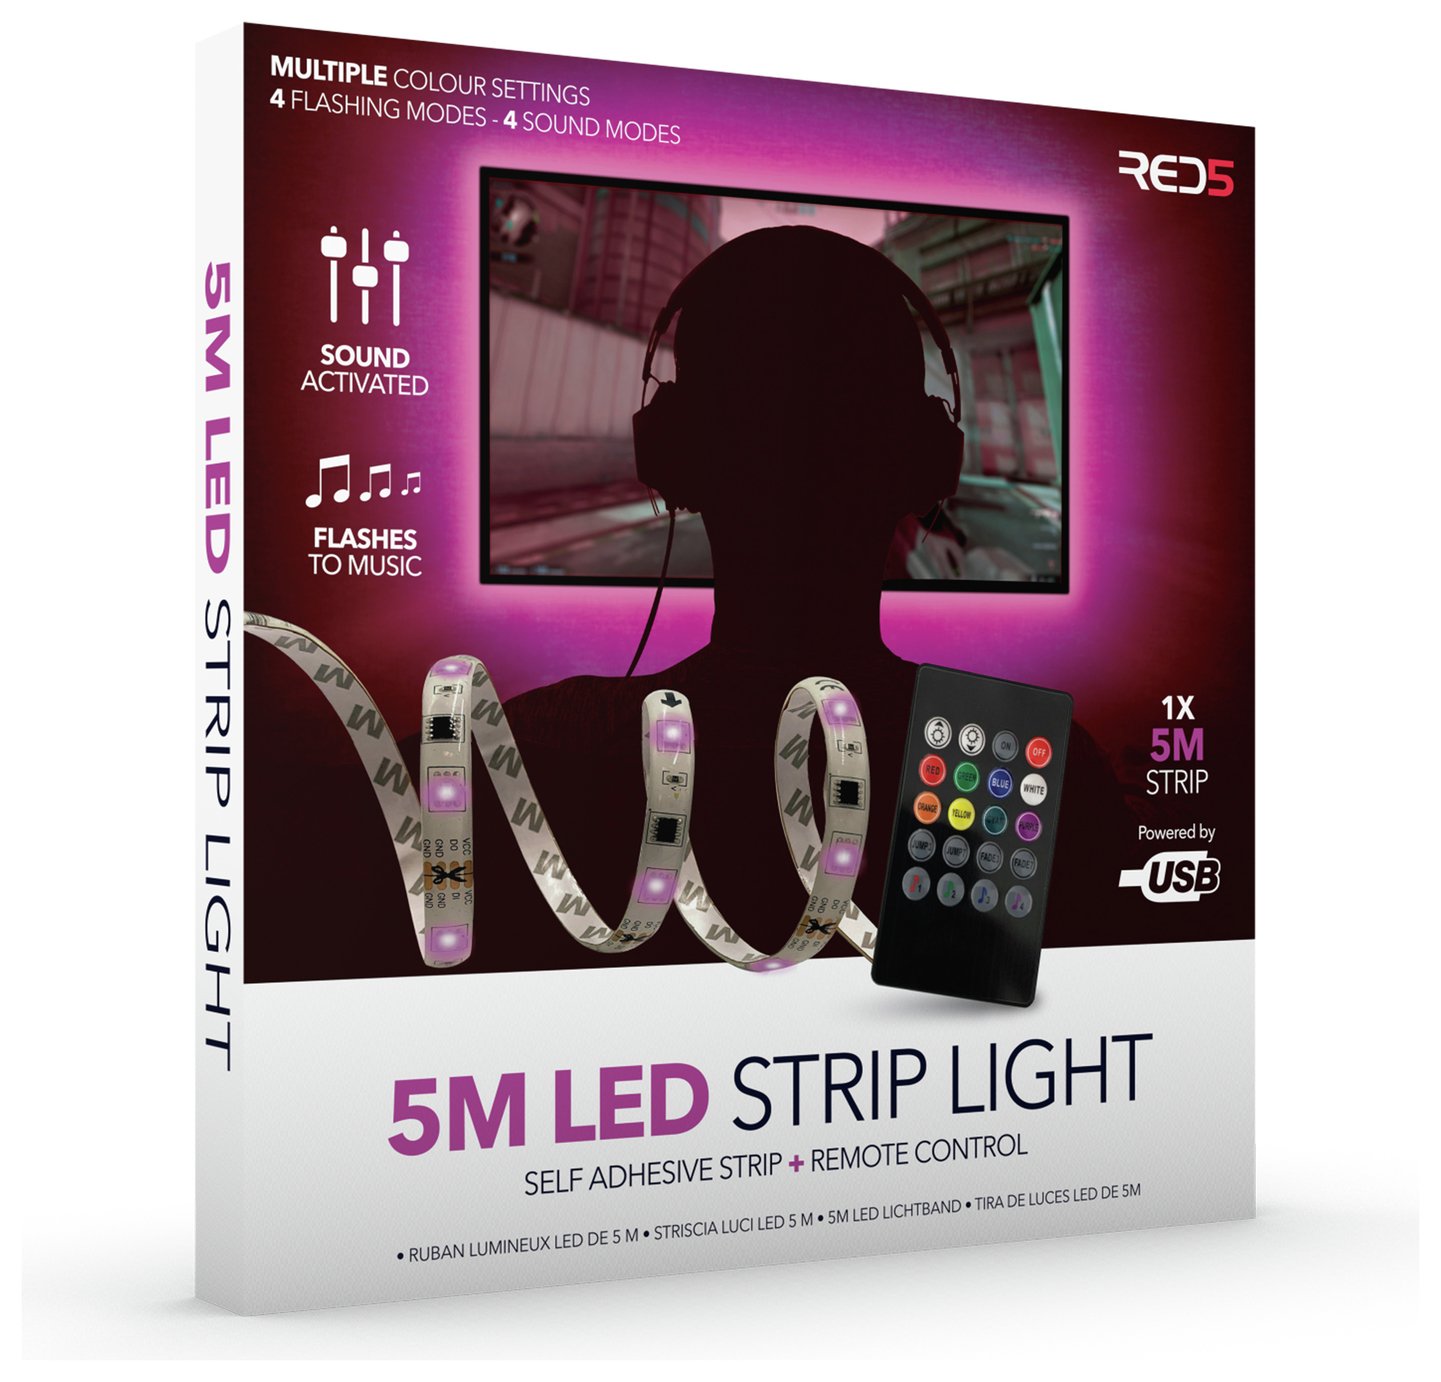 Red5 LED Strip Lights -5m